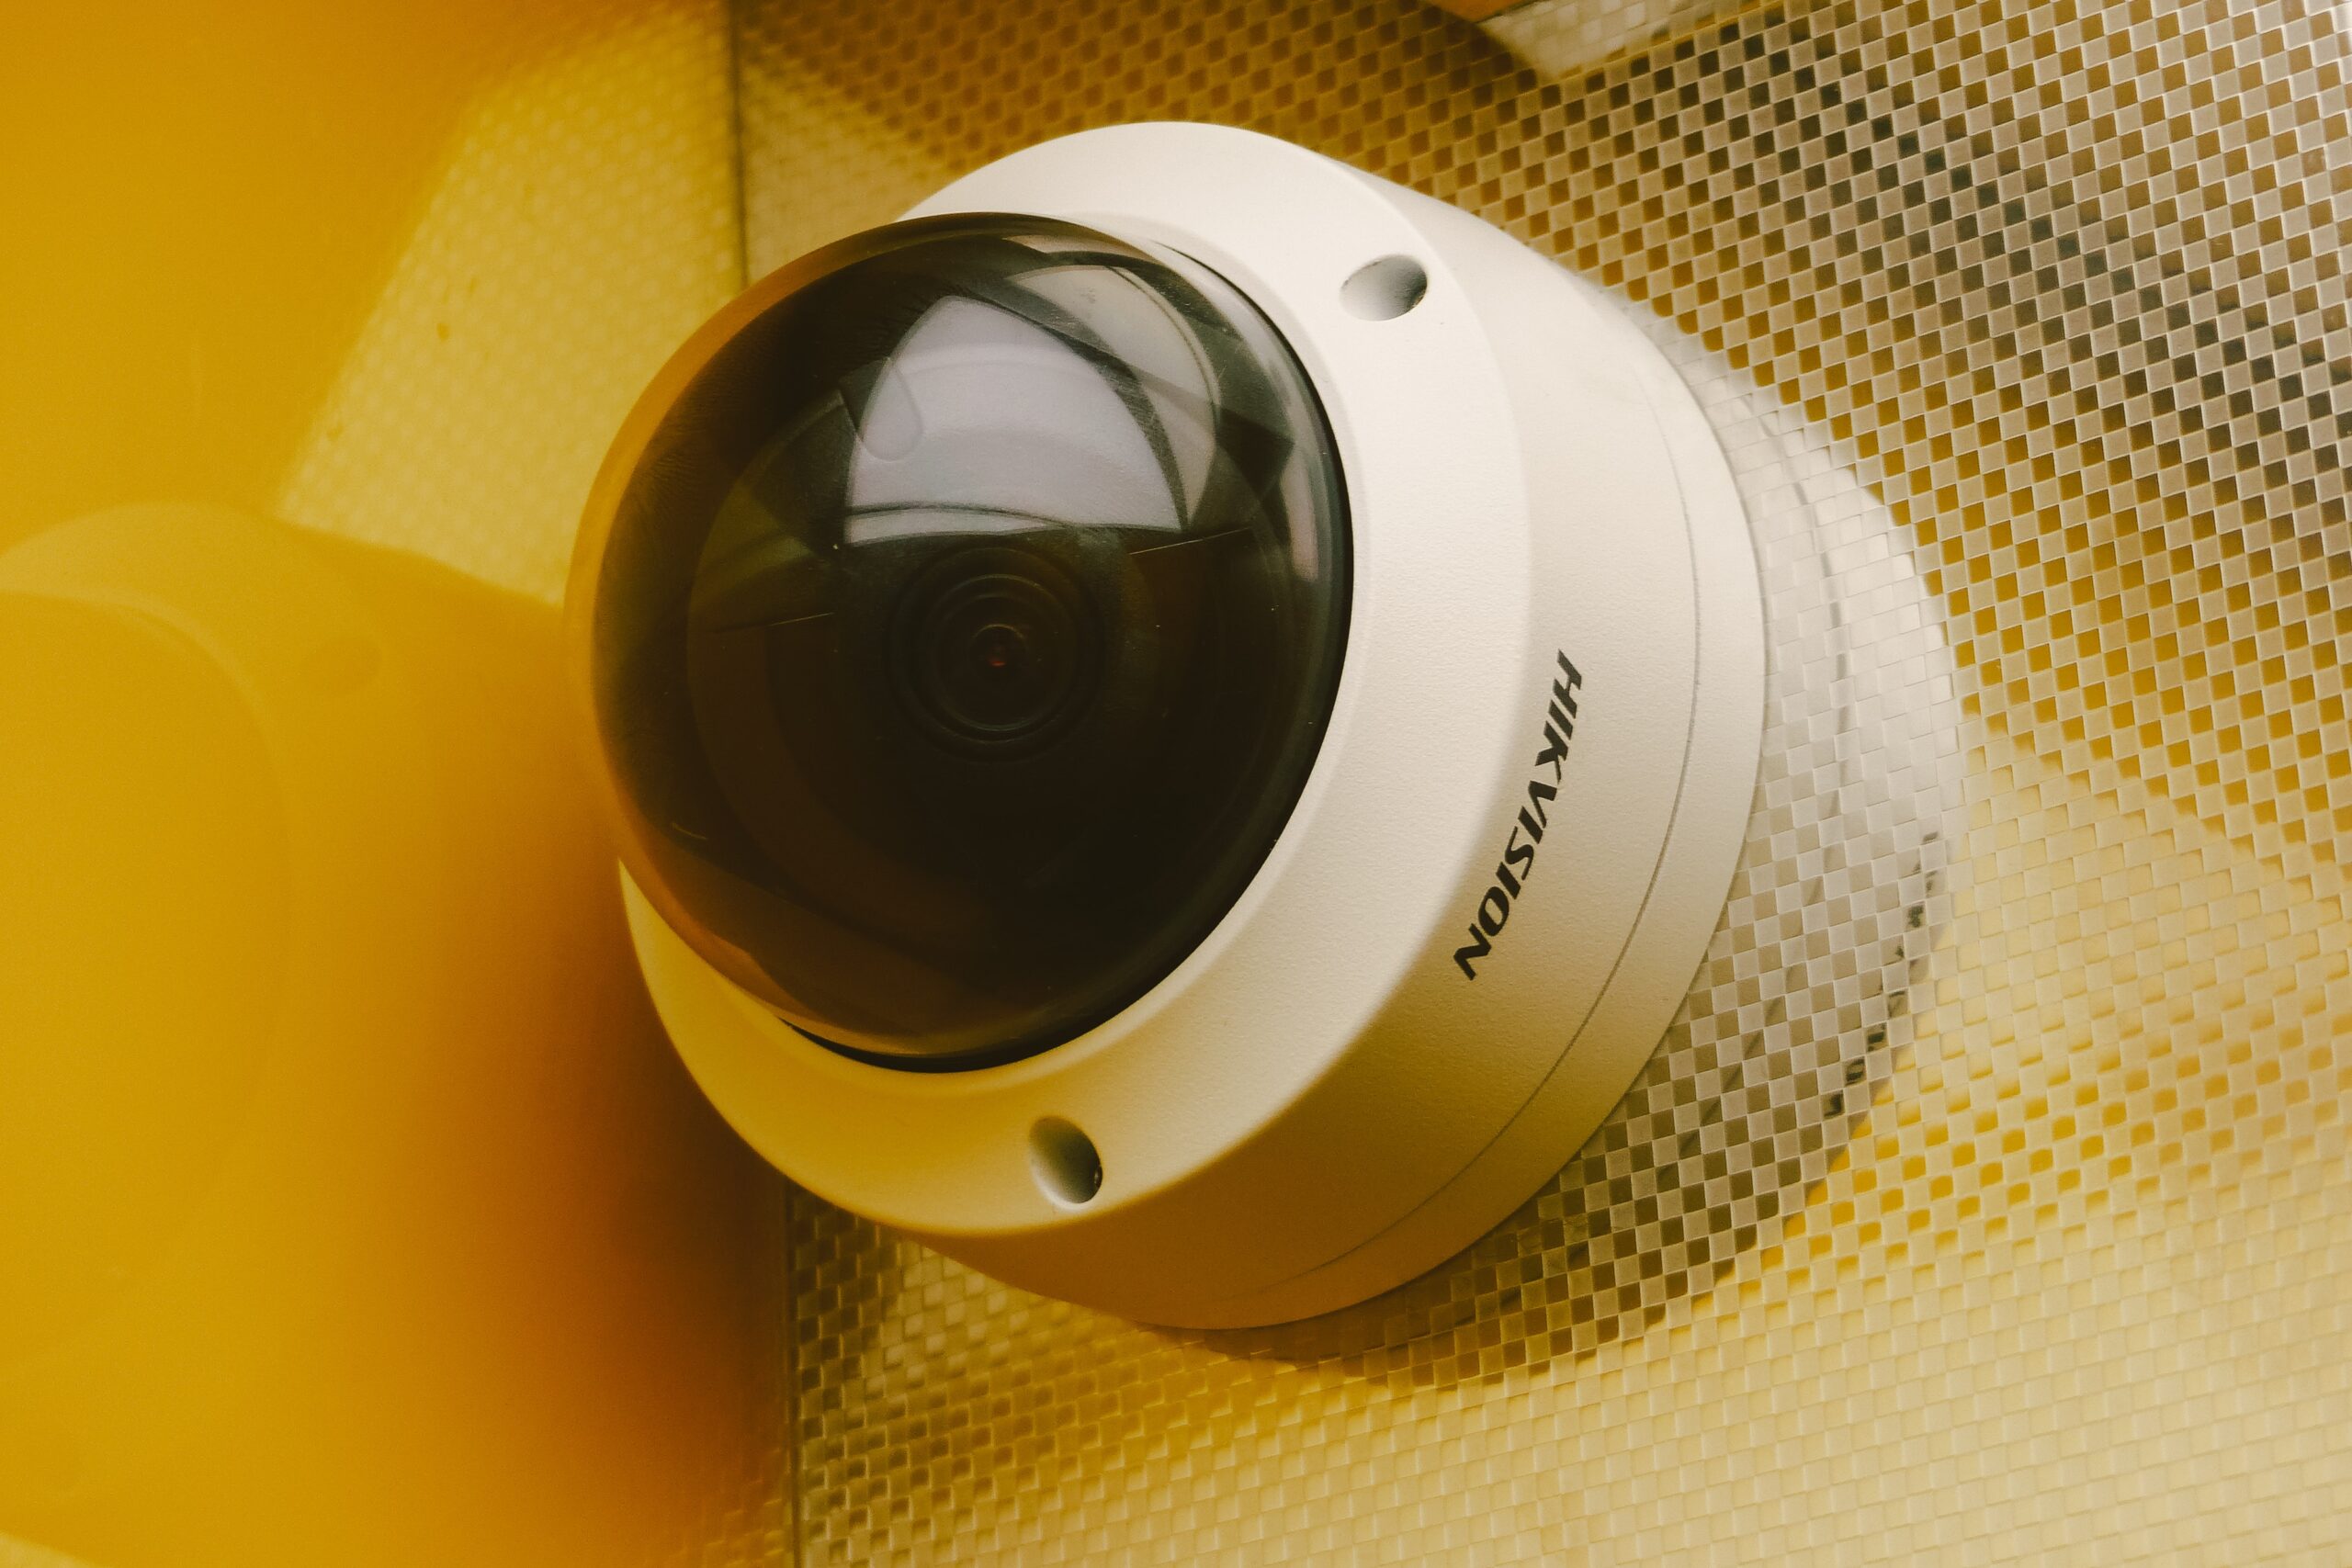 Berapa Biaya Yang Dikeluarkan Untuk Memasang Kamera CCTV?